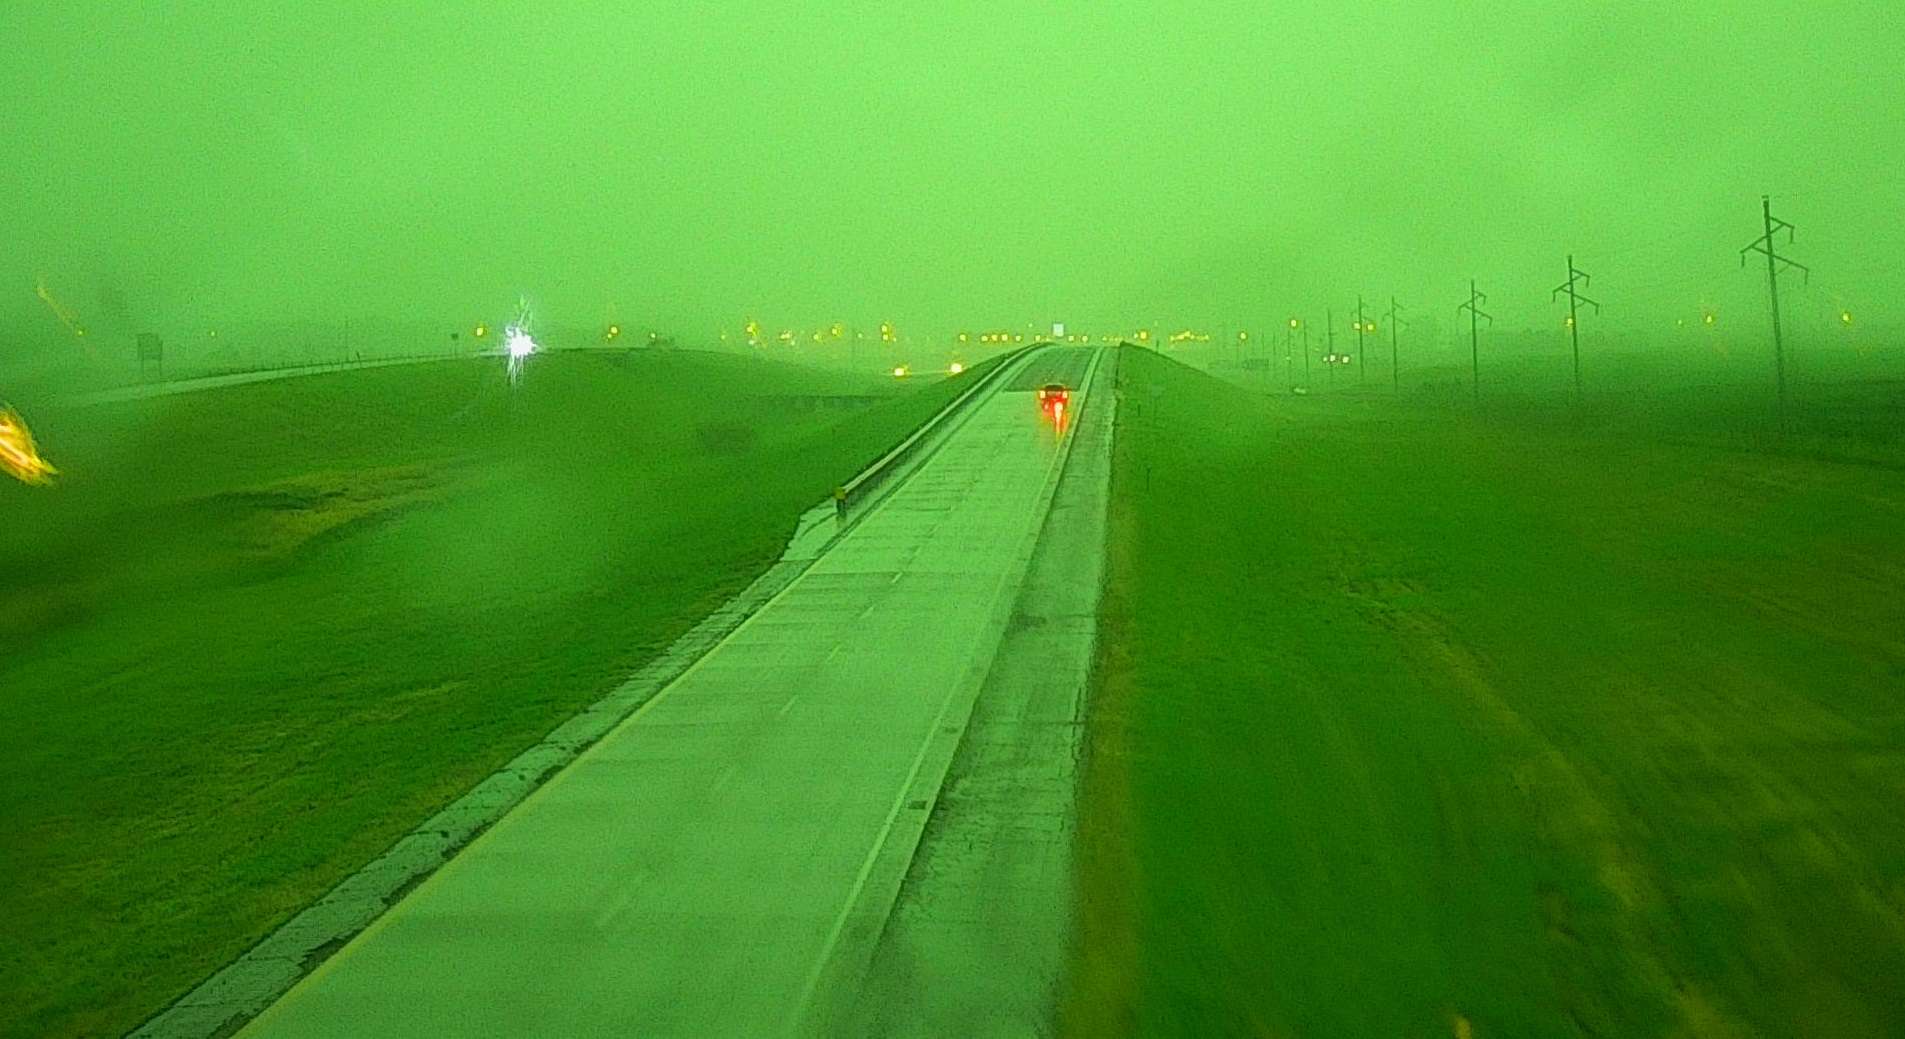 Le ciel est devenu vert l'espace de quelques minutes dans la ville de Sioux Falls au Dakota du Sud mardi. © webcam Sioux Falls